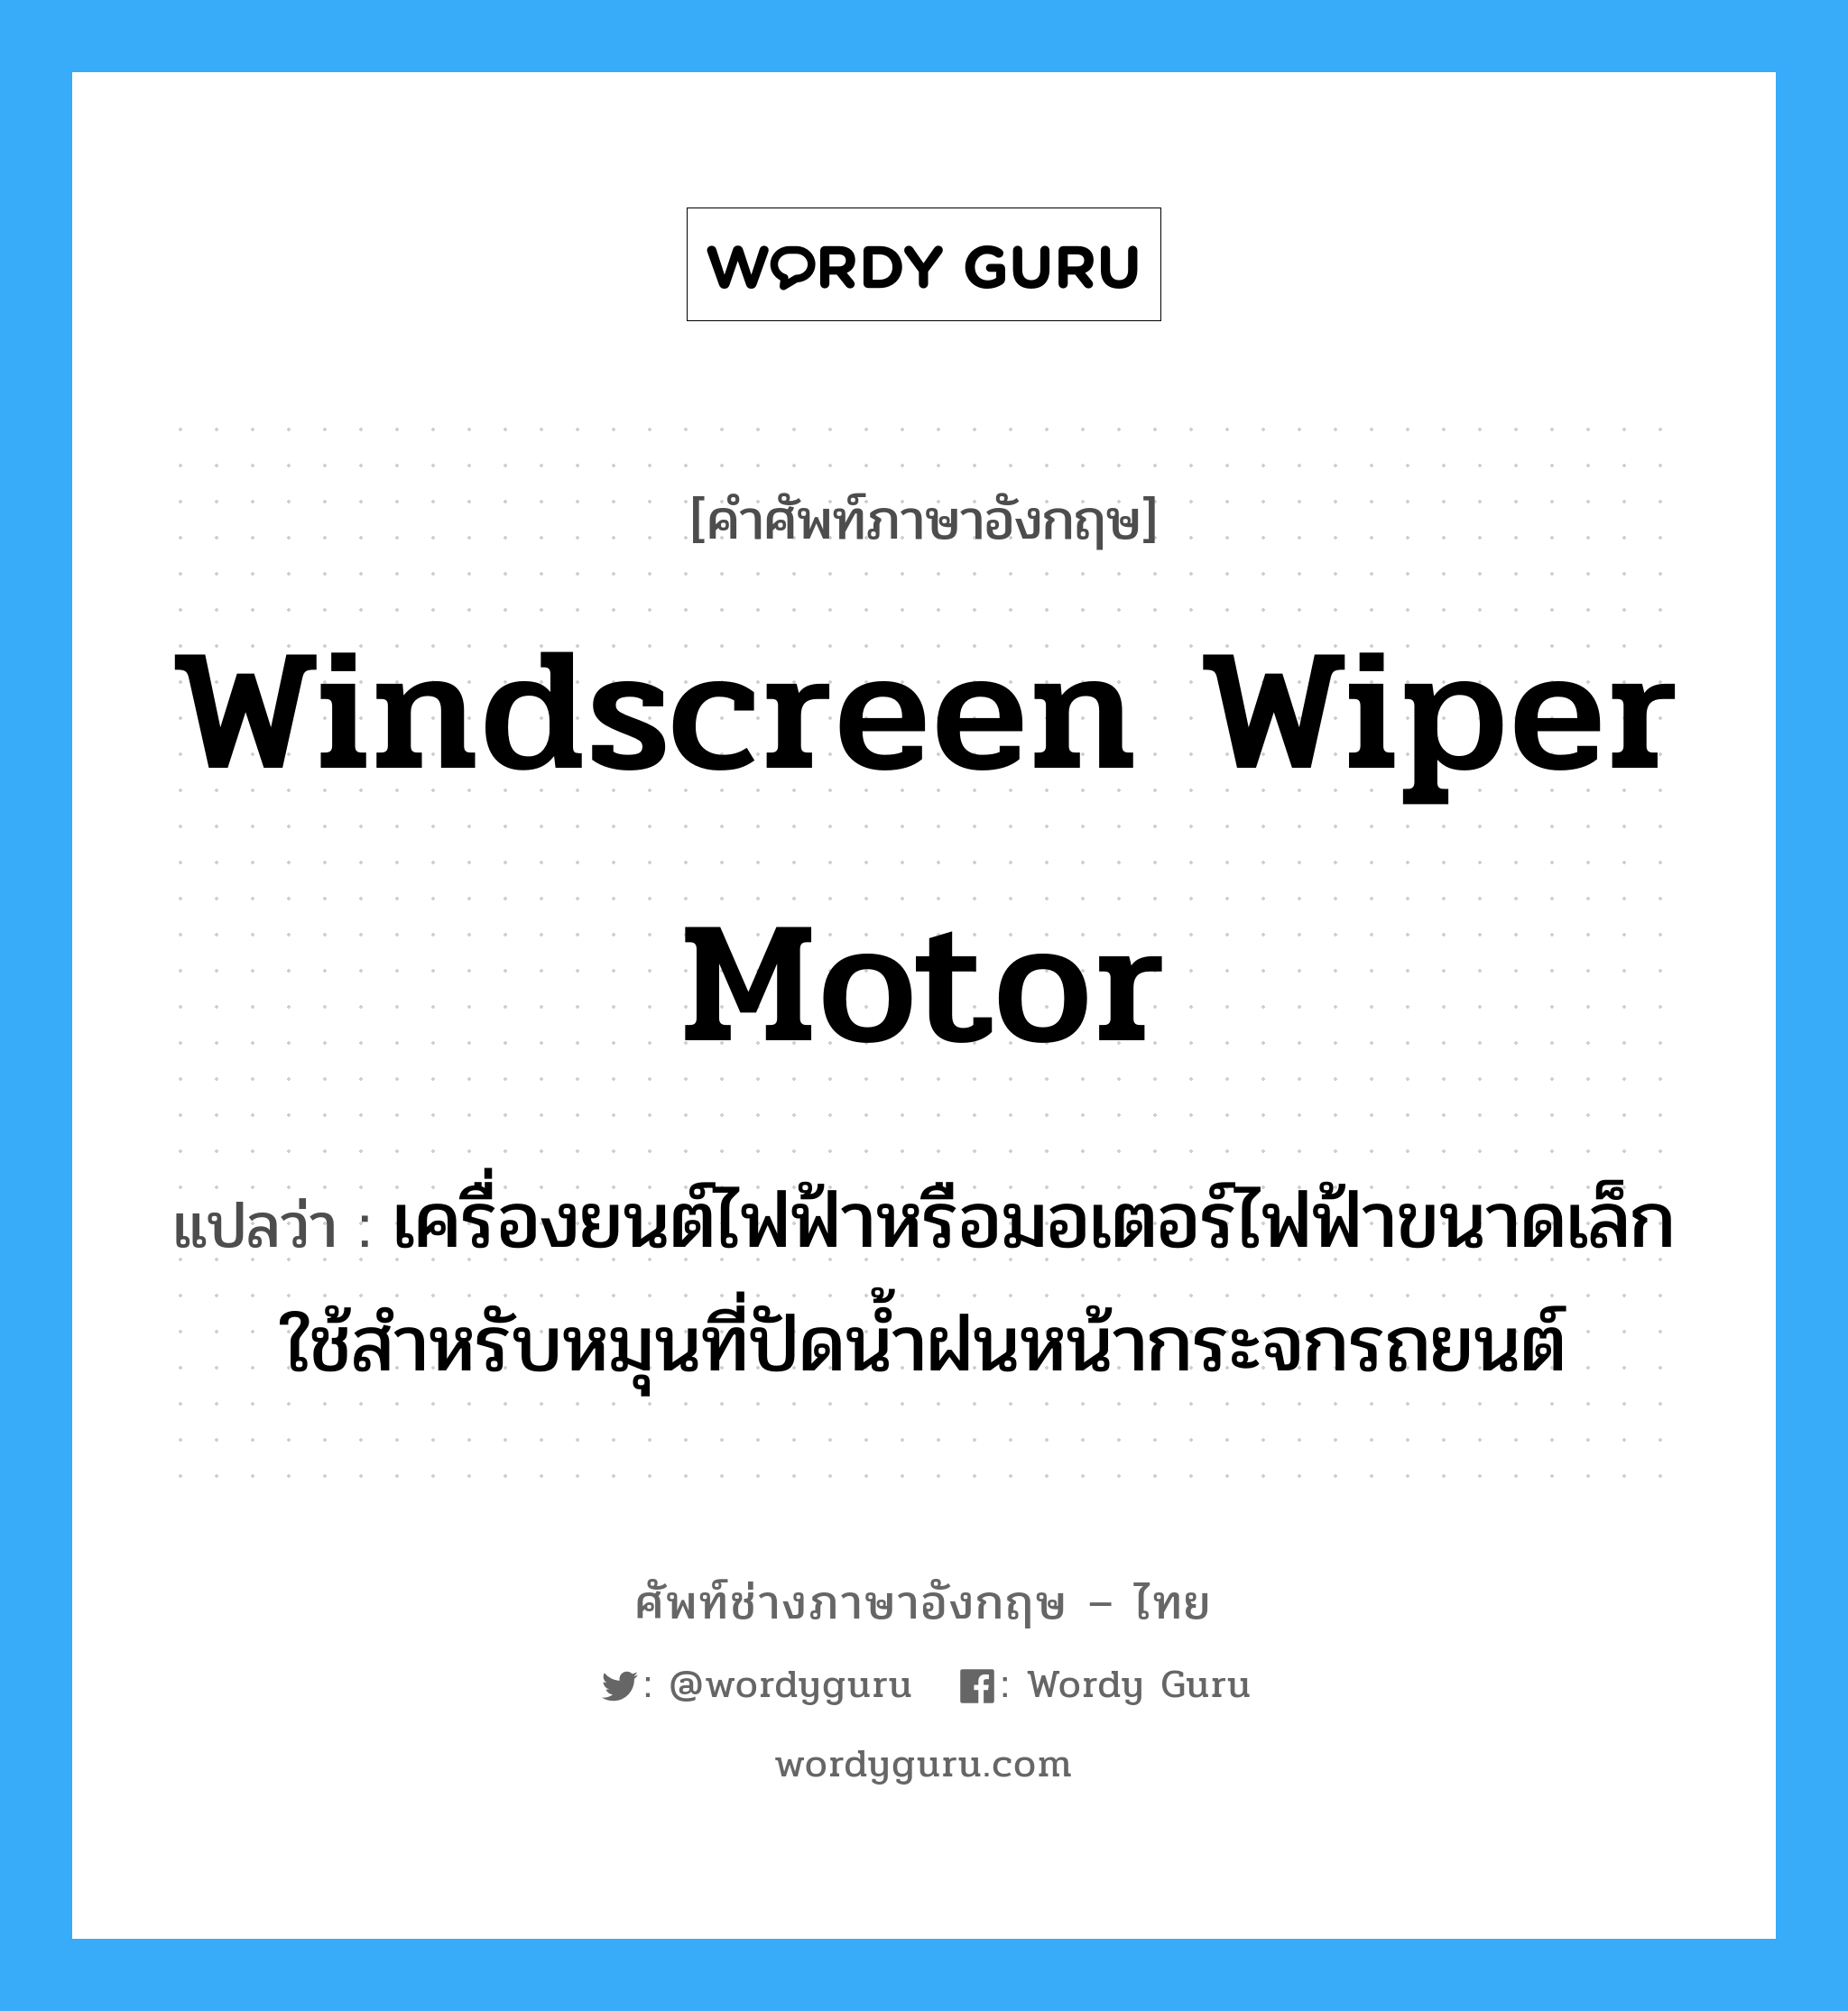 windscreen wiper motor แปลว่า?, คำศัพท์ช่างภาษาอังกฤษ - ไทย windscreen wiper motor คำศัพท์ภาษาอังกฤษ windscreen wiper motor แปลว่า เครื่องยนต์ไฟฟ้าหรือมอเตอร์ไฟฟ้าขนาดเล็ก ใช้สำหรับหมุนที่ปัดน้ำฝนหน้ากระจกรถยนต์